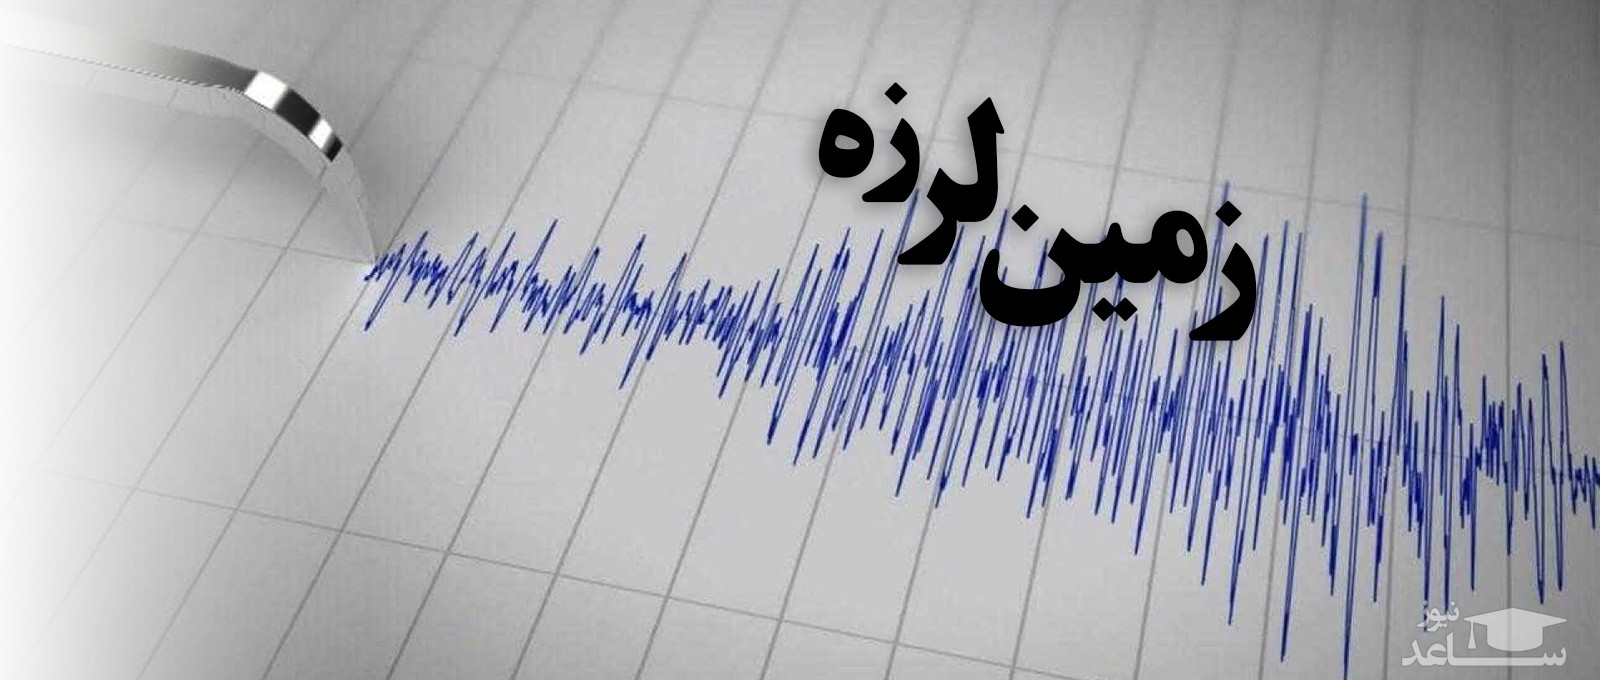 زلزله این بار در مشهد به قدرت 3.5 ریشتر